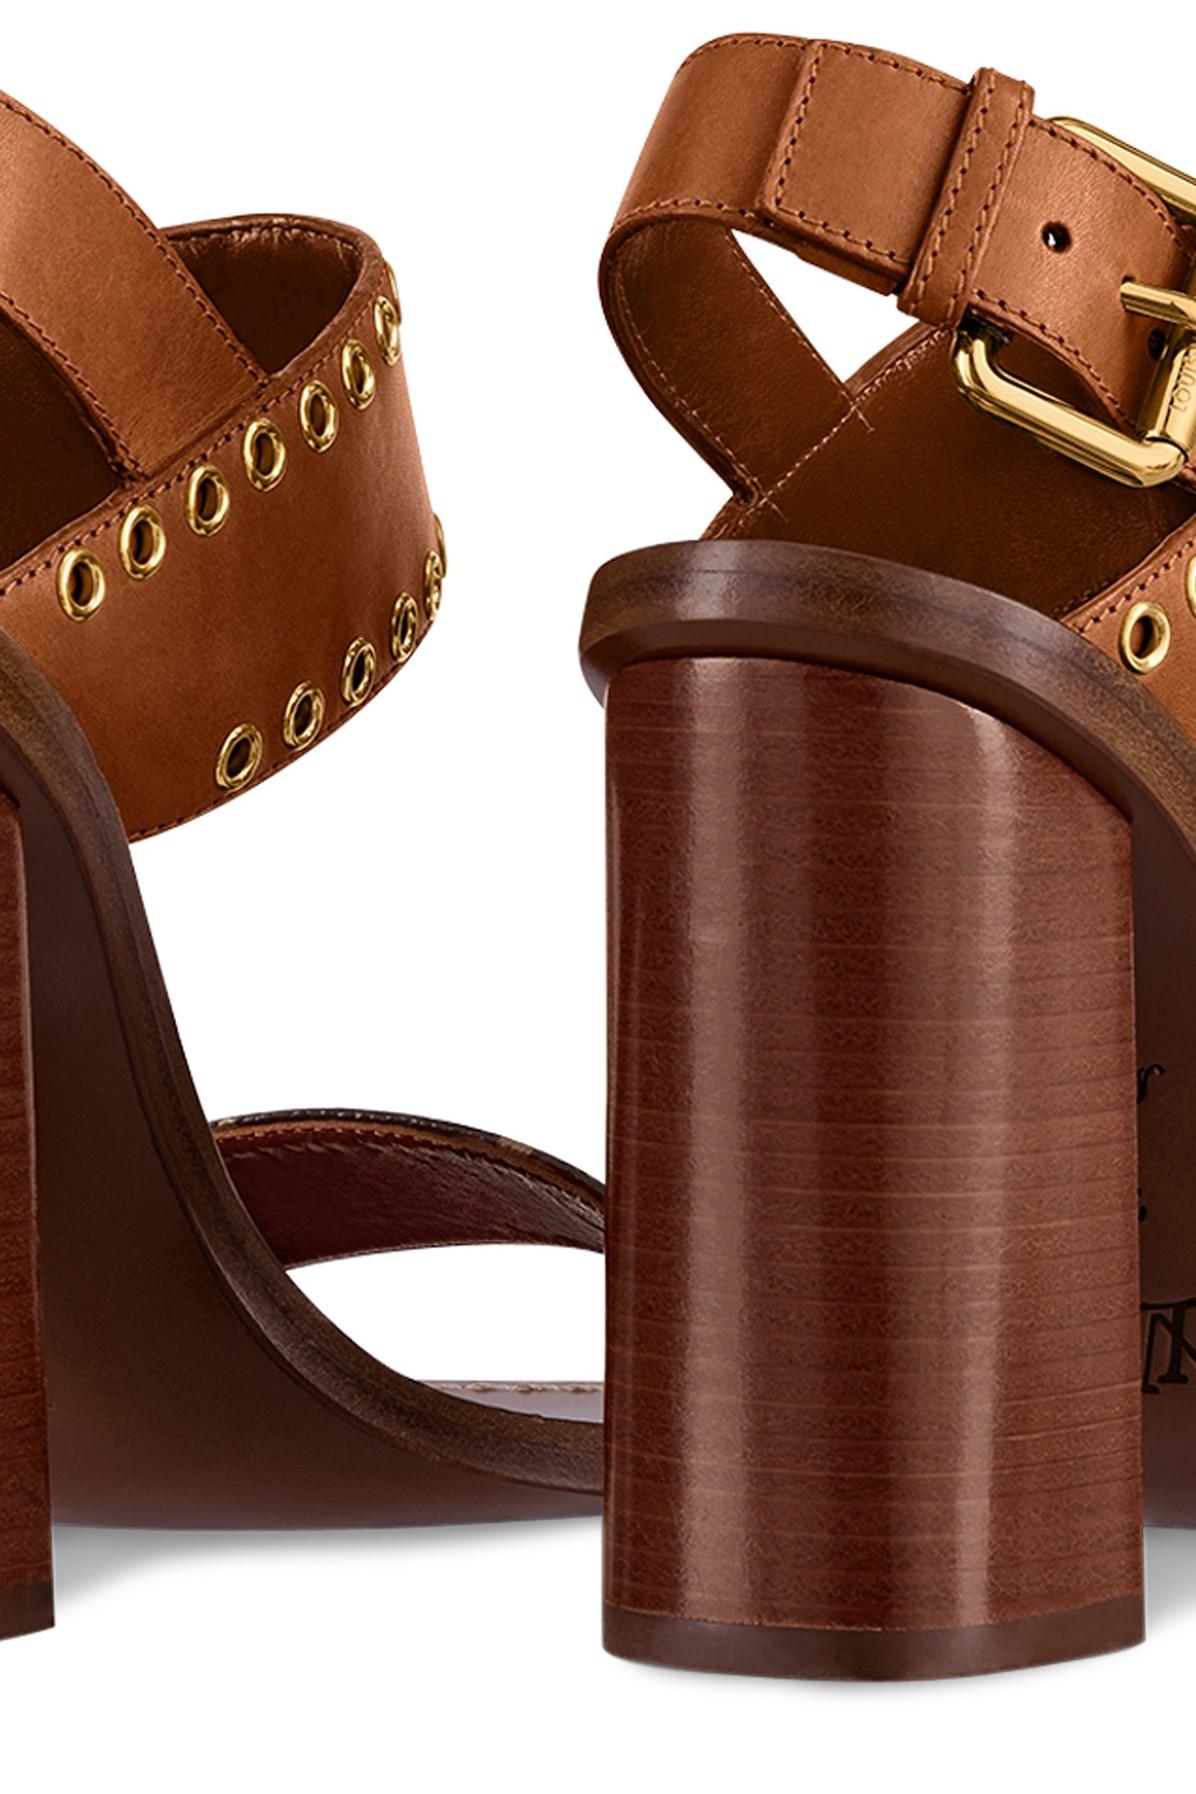 Authentic Louis Vuitton Passenger Leather Sandal